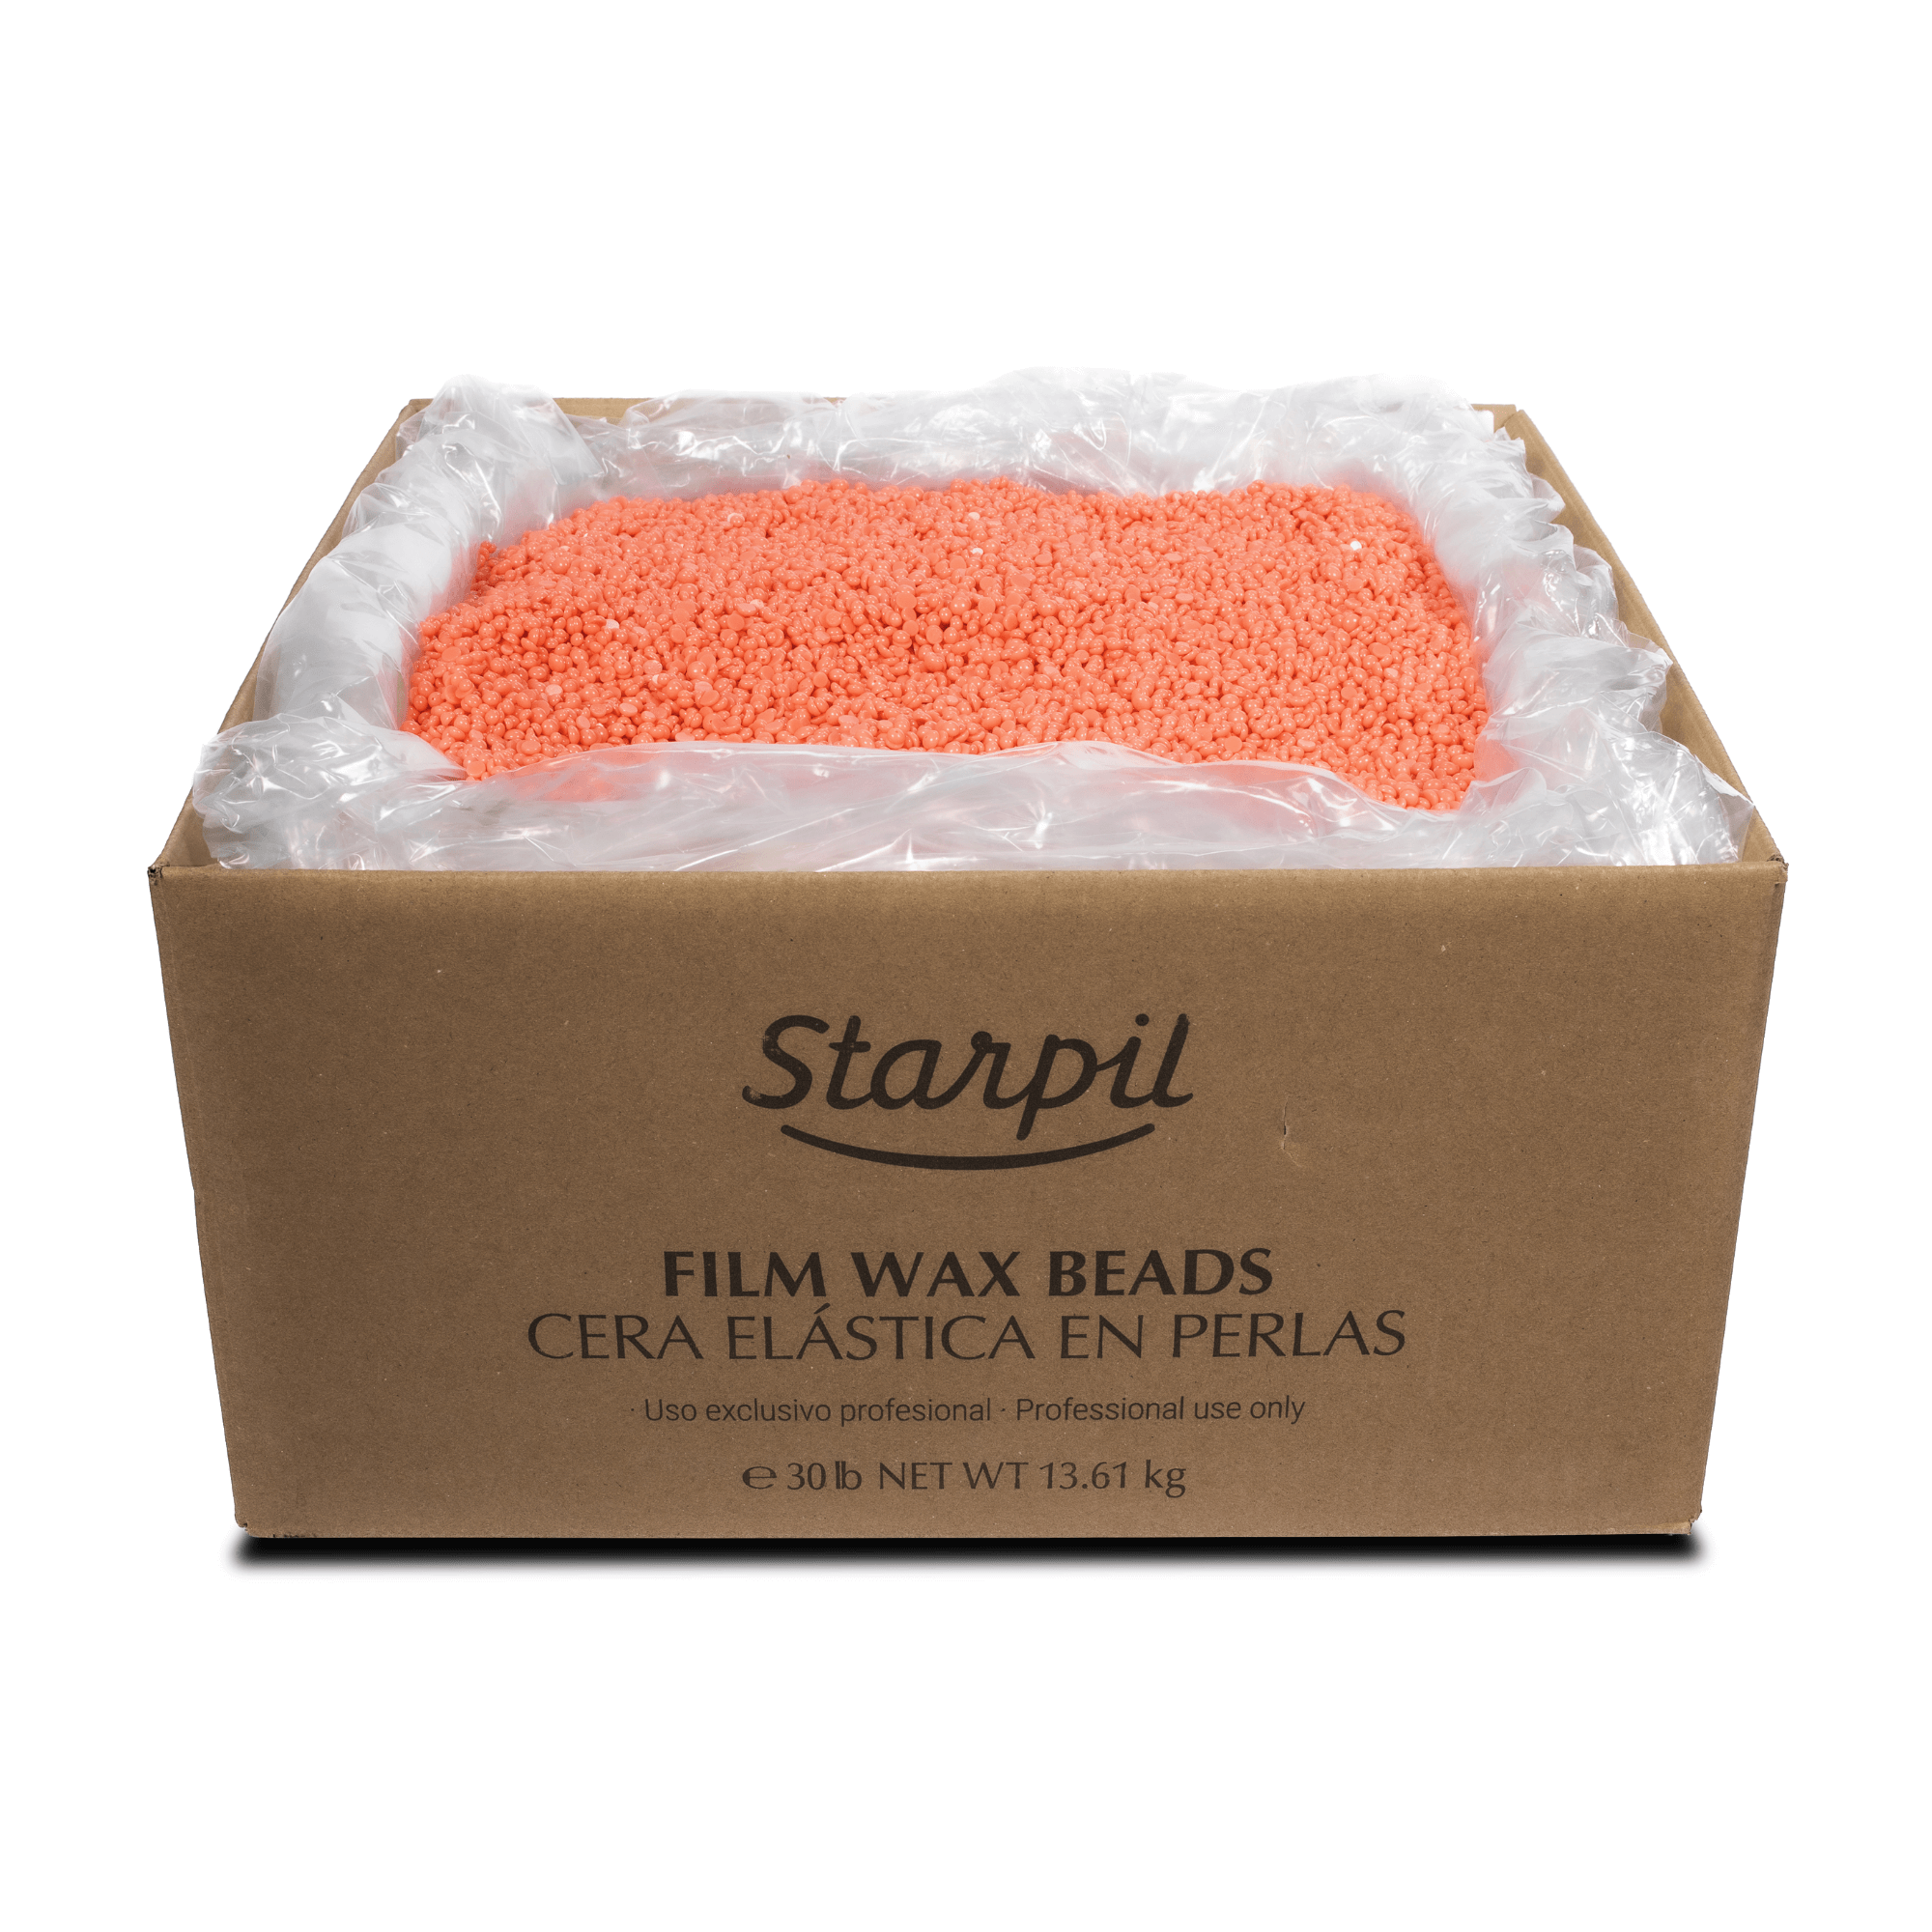 Coral Wax Beads 30LBS Box